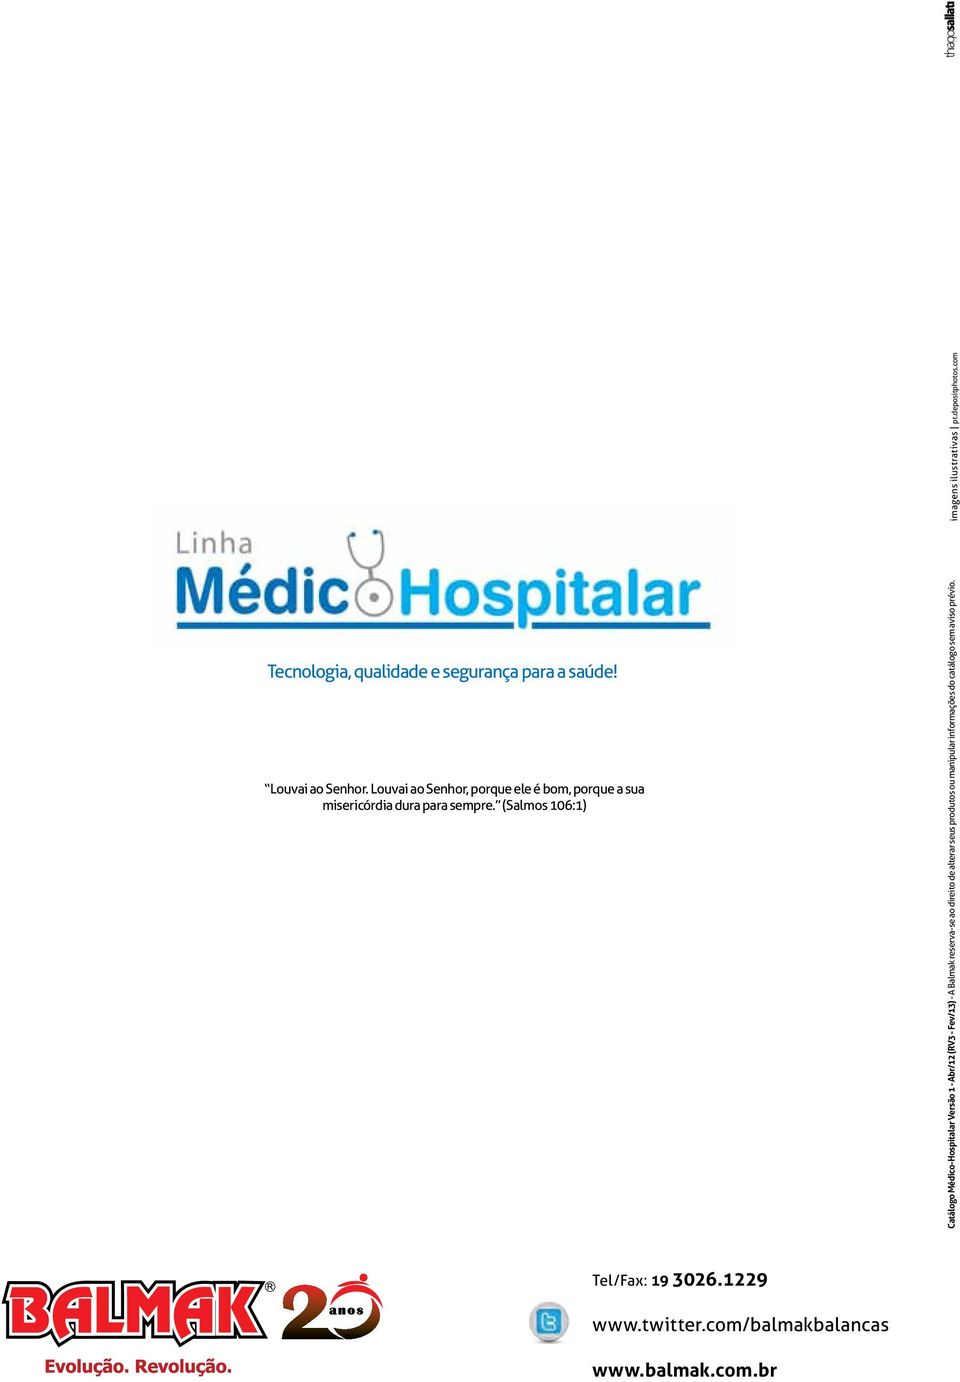 (Salmos 106:1) Catálogo Médico-Hospitalar Versão 1 - Abr/12 (RV3 - Fev/13) - A Balmak reserva-se ao direito de